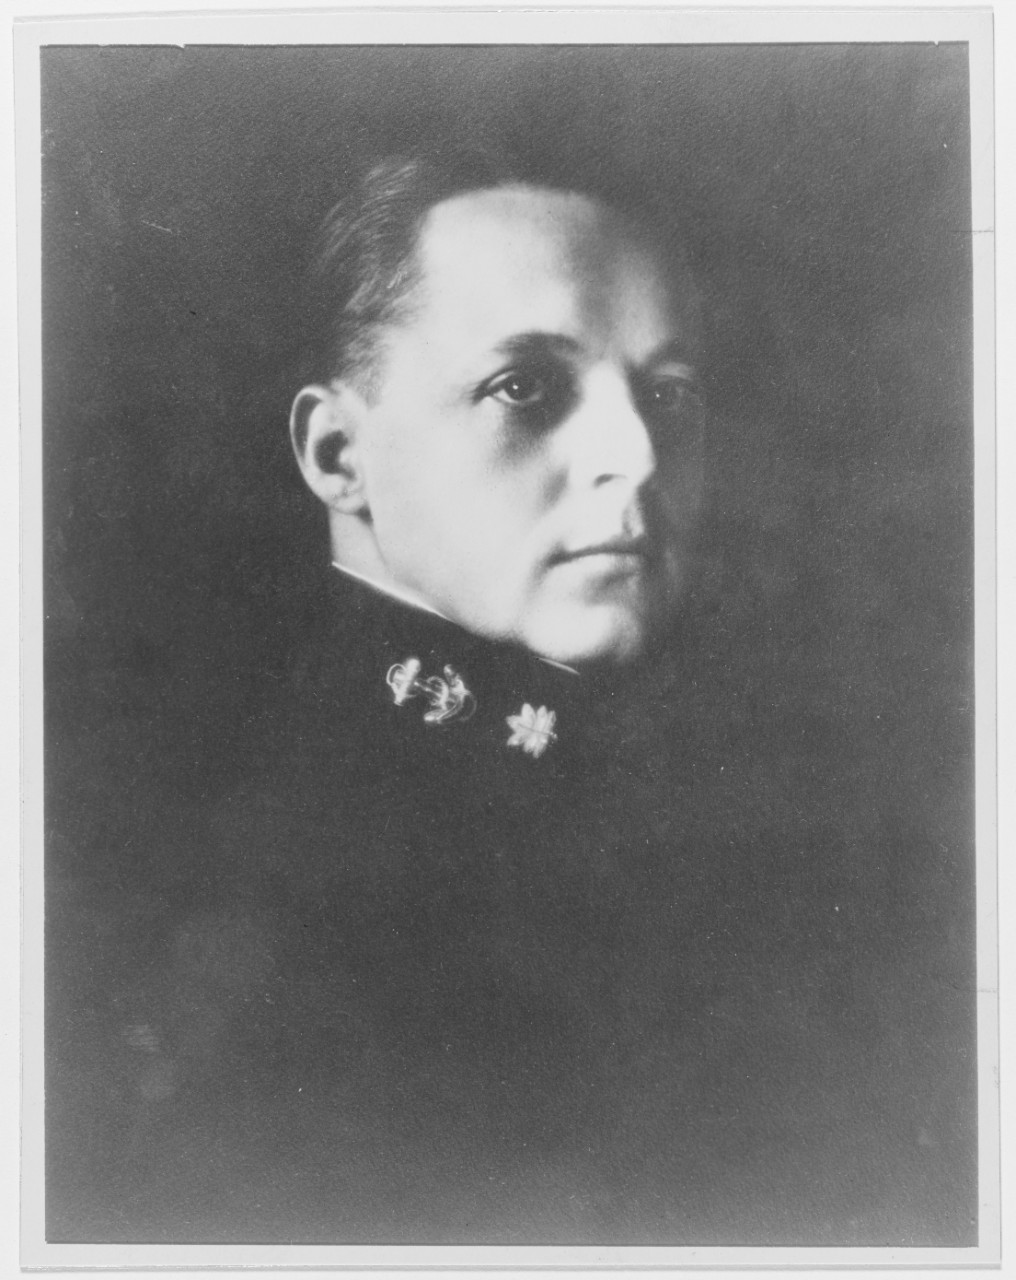 Commander Ralph R. Stewart USN